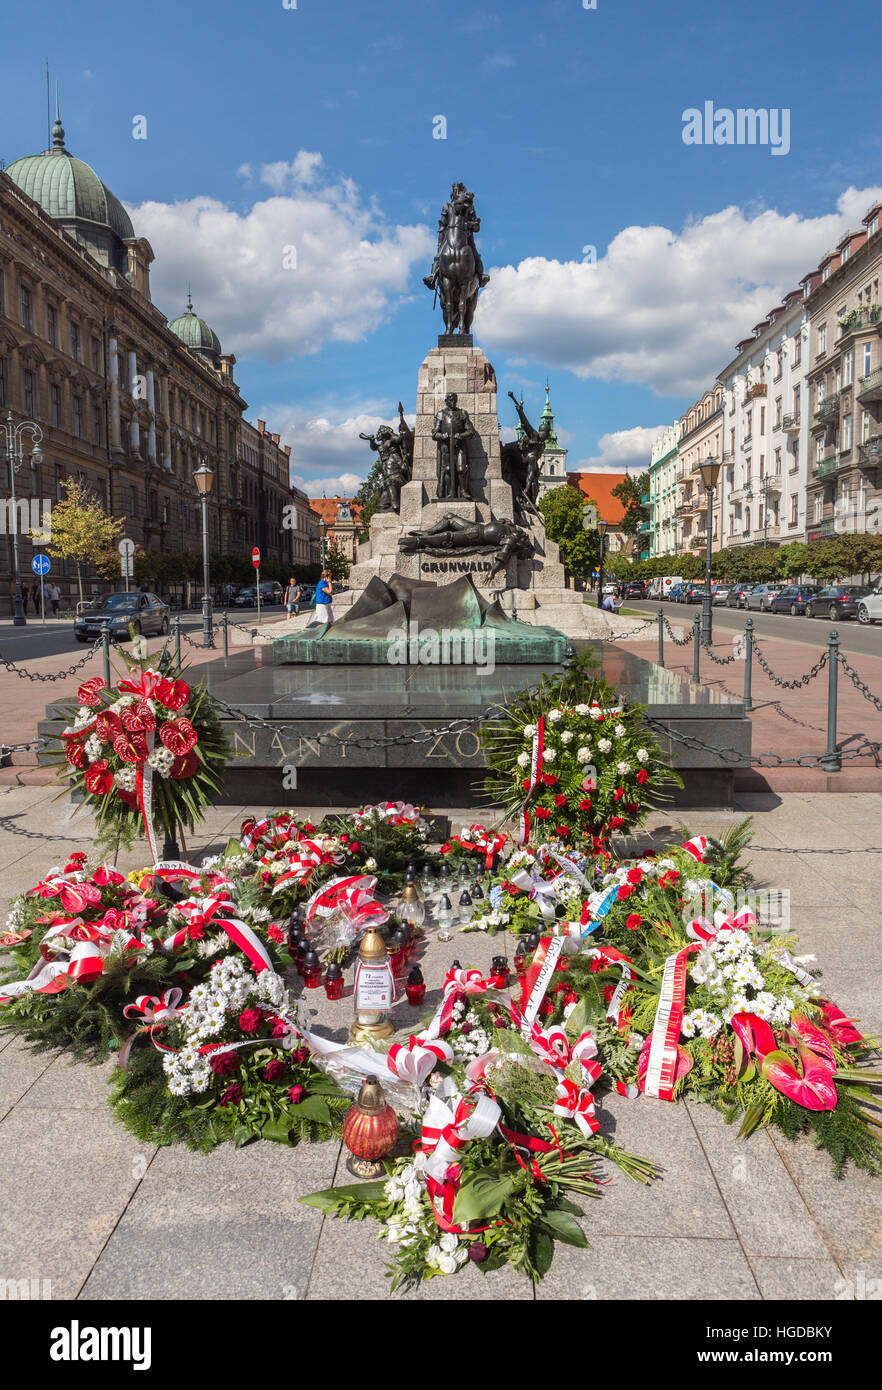 Grunwald Monument in Krakow Stock Photo